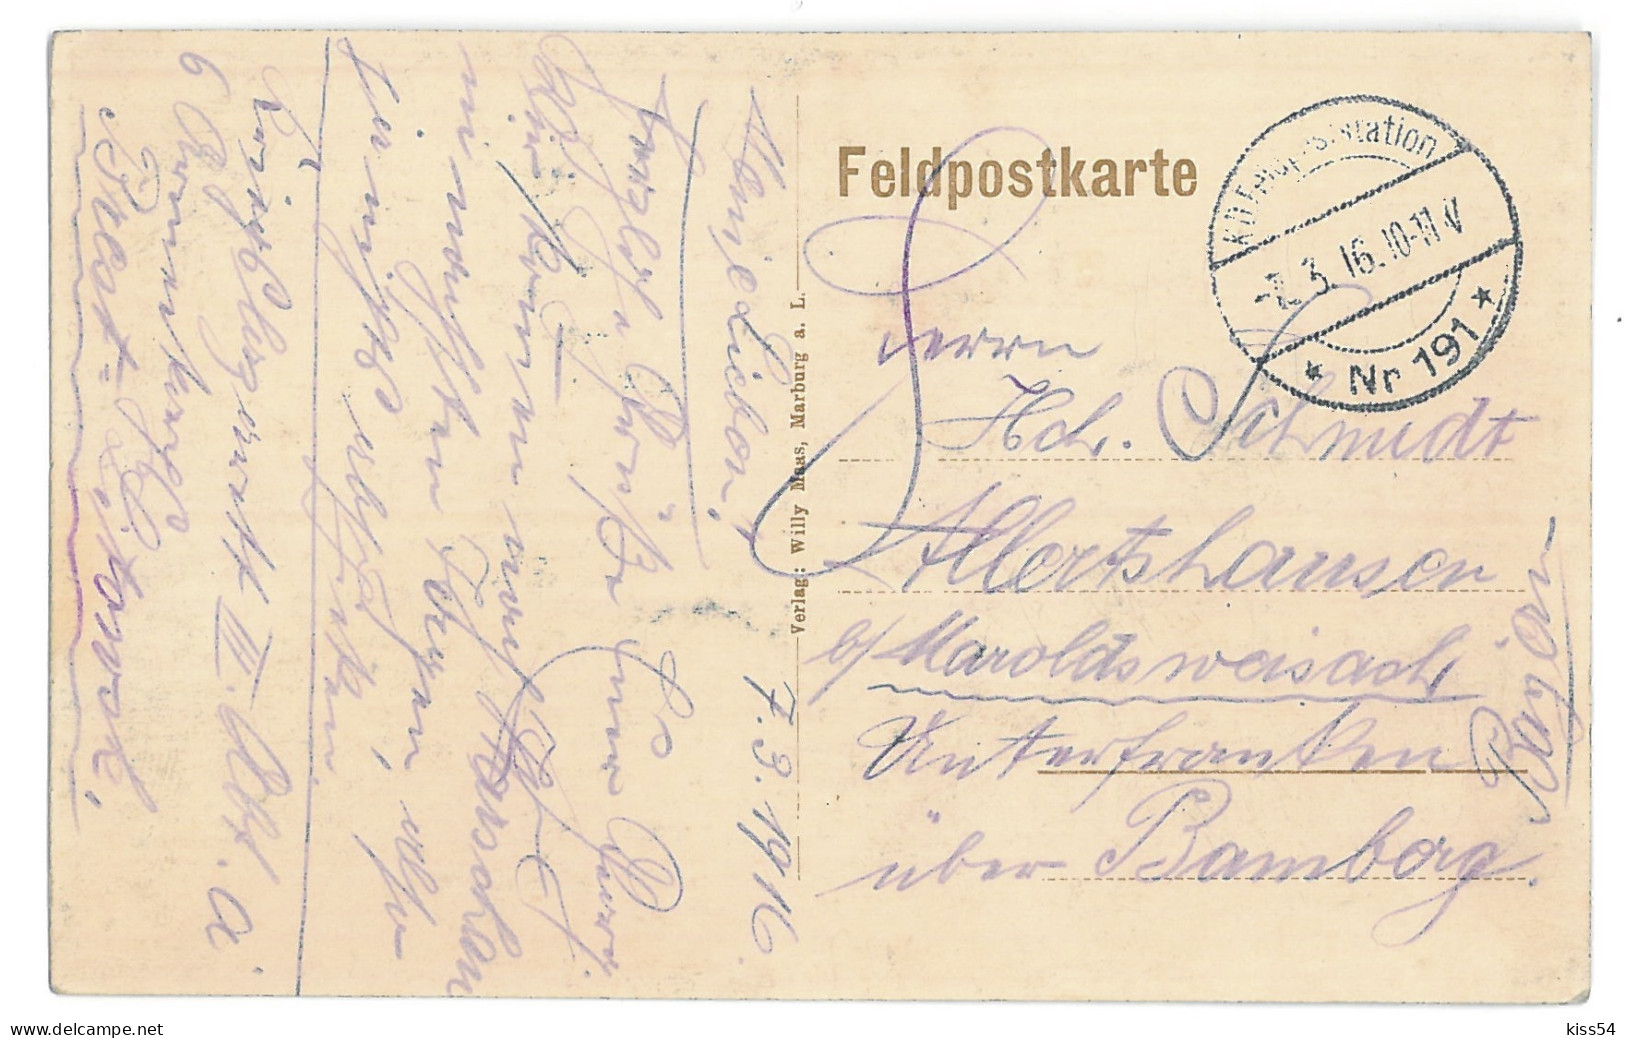 BL 35 - 14070 BREST LITOWSK, Belarus, Bombed Houses - Old Postcard, CENSOR - 1916 - Weißrussland